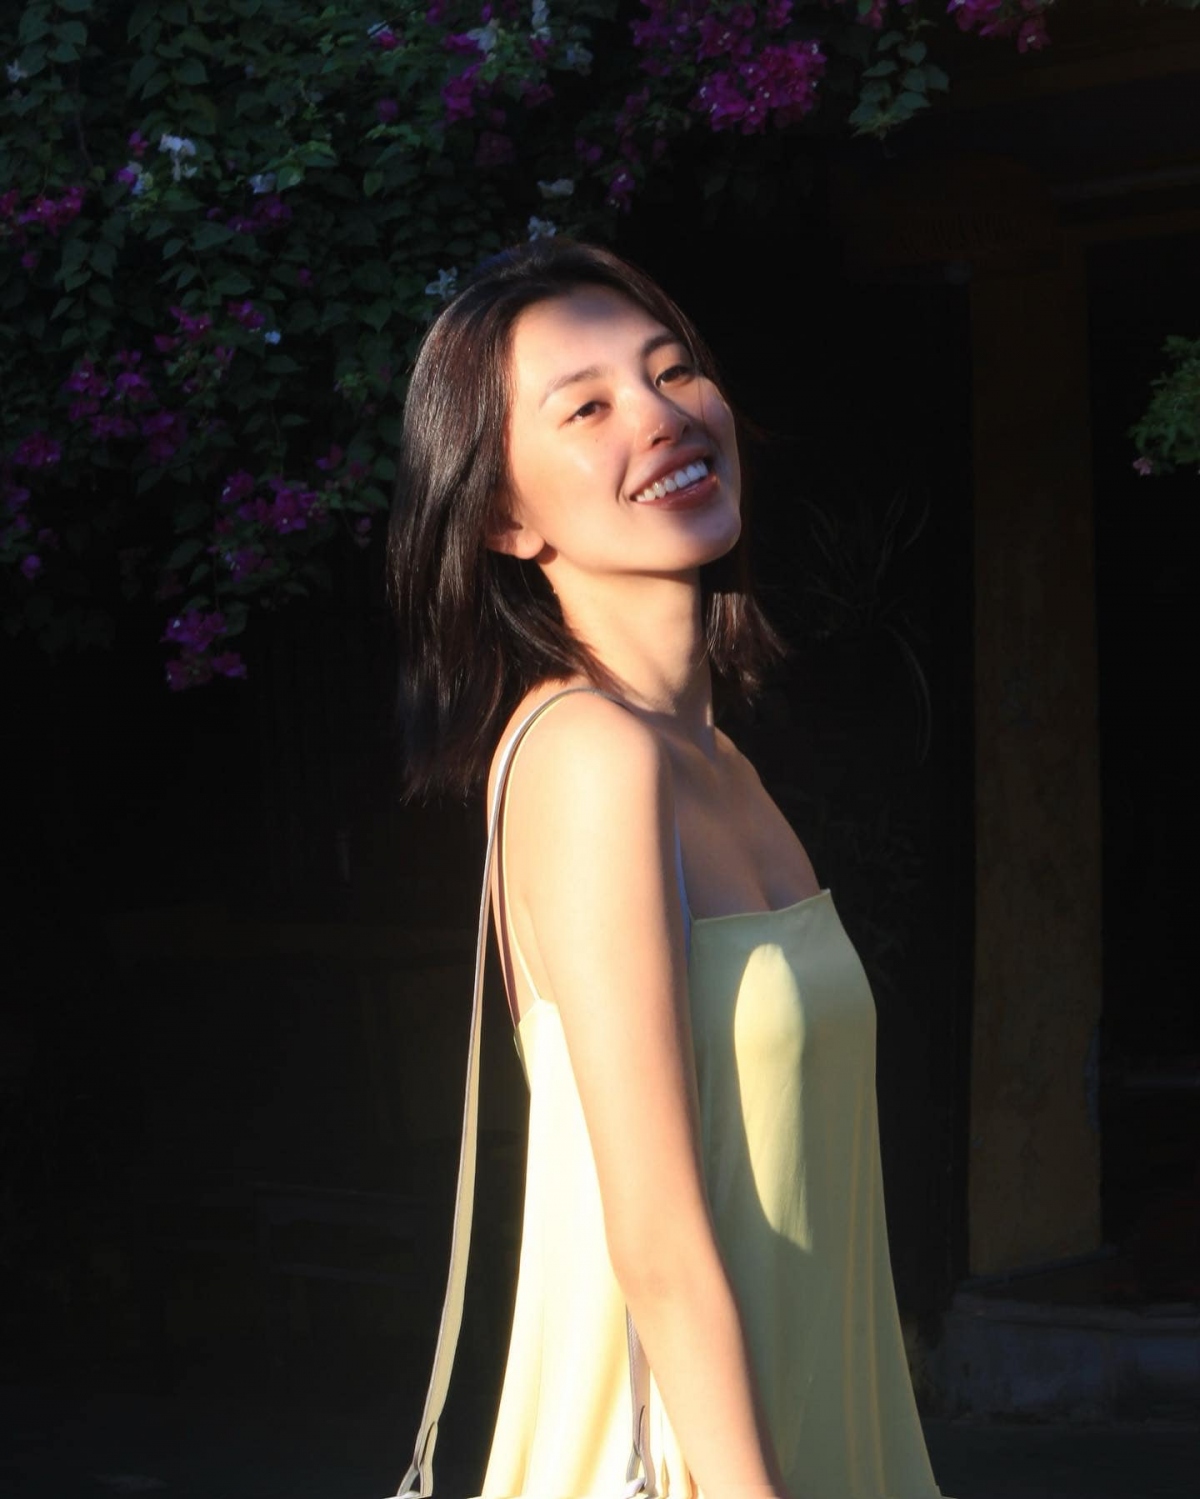 Hoa hậu Tiểu Vy khoe sắc xinh đẹp dưới nắng ở quê nhà Hội An - Ảnh 2.